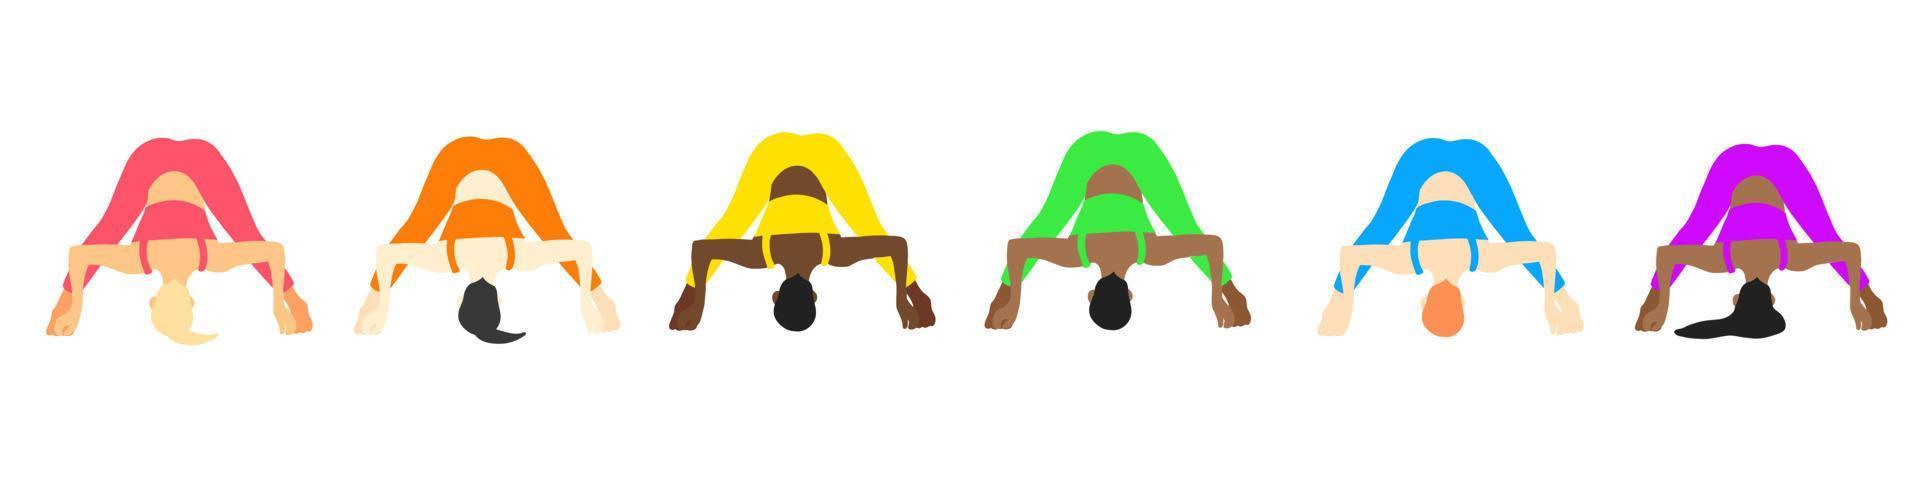 colección de posturas de yoga. europeo, africano, asiático. mujer mujer niña. ilustración vectorial en estilo plano de dibujos animados aislado sobre fondo blanco. vector